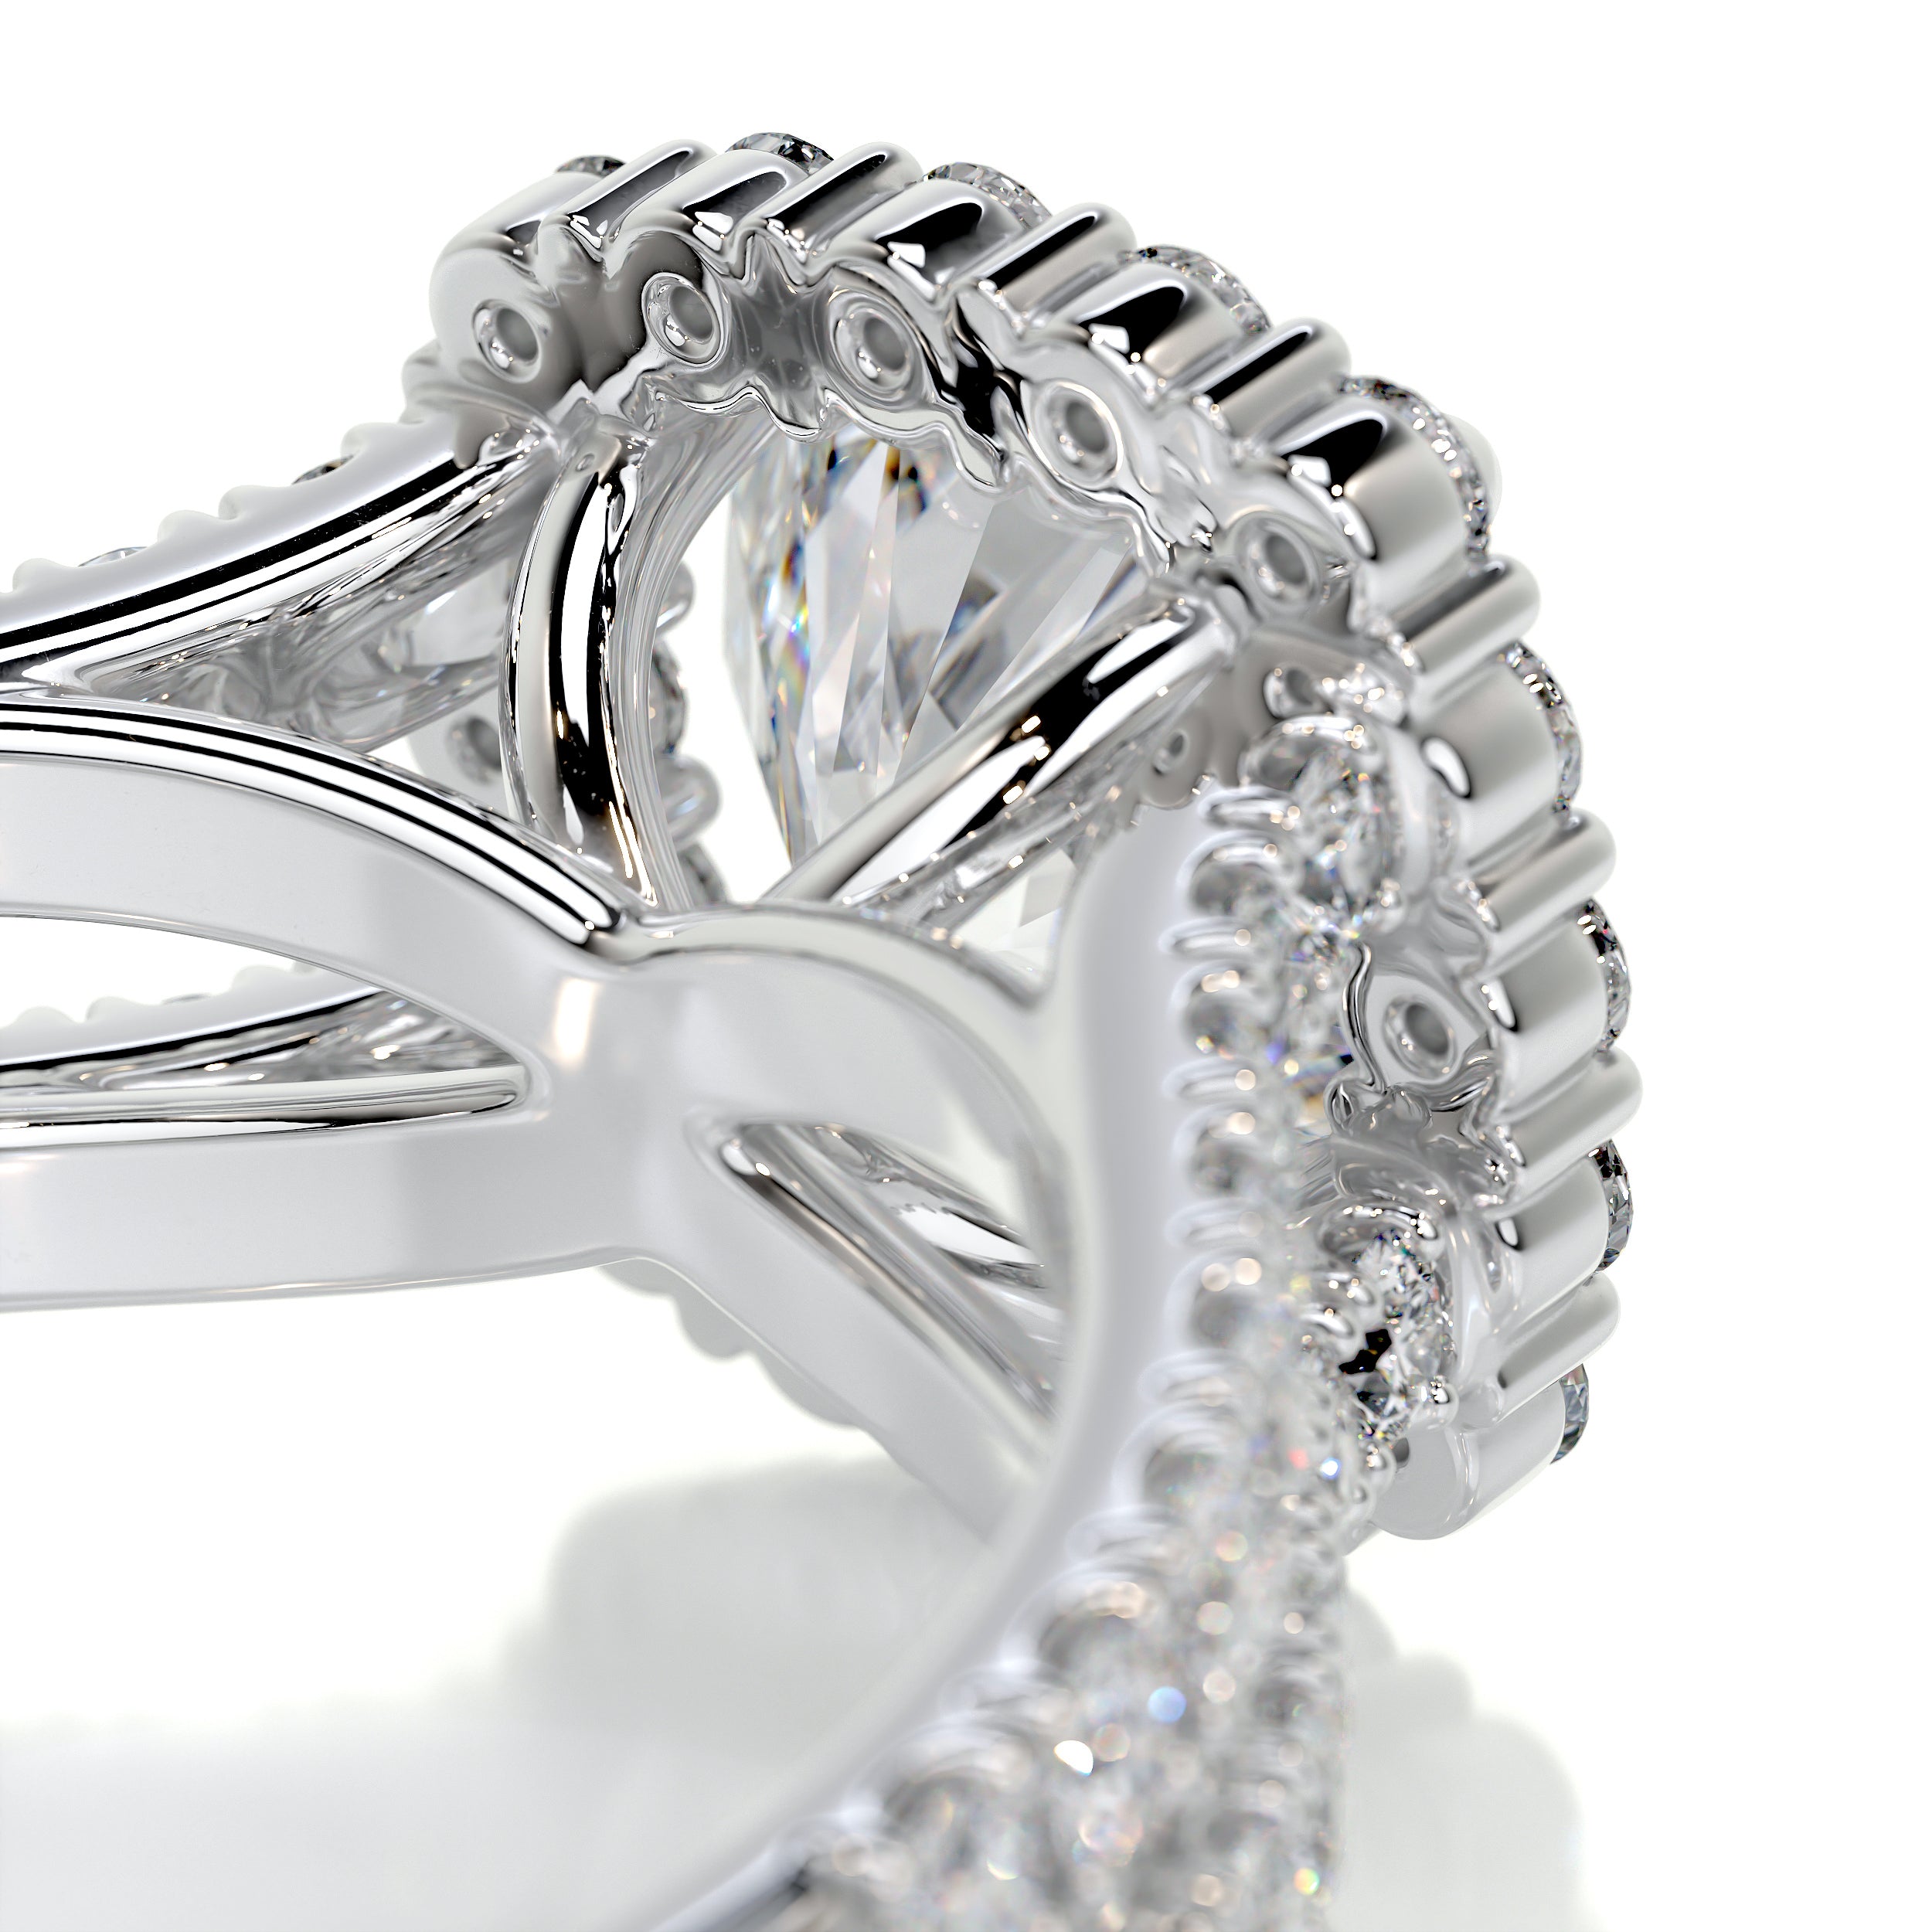 Hilary Diamond Engagement Ring -14K White Gold